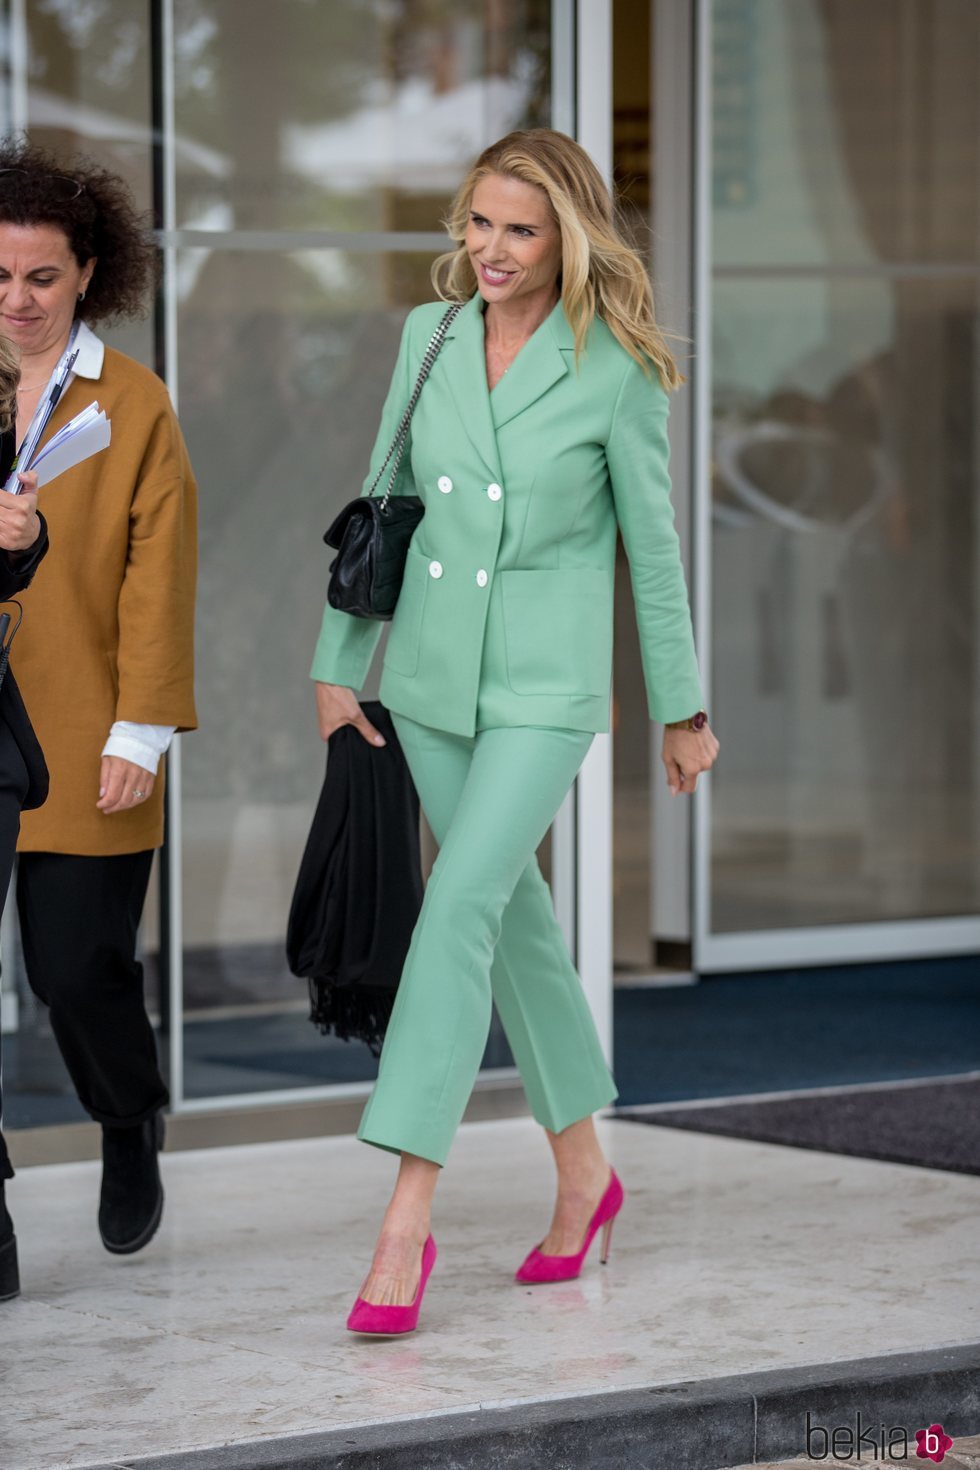 Judit Mascó en Cannes con un traje de chaqueta en tono verde menta